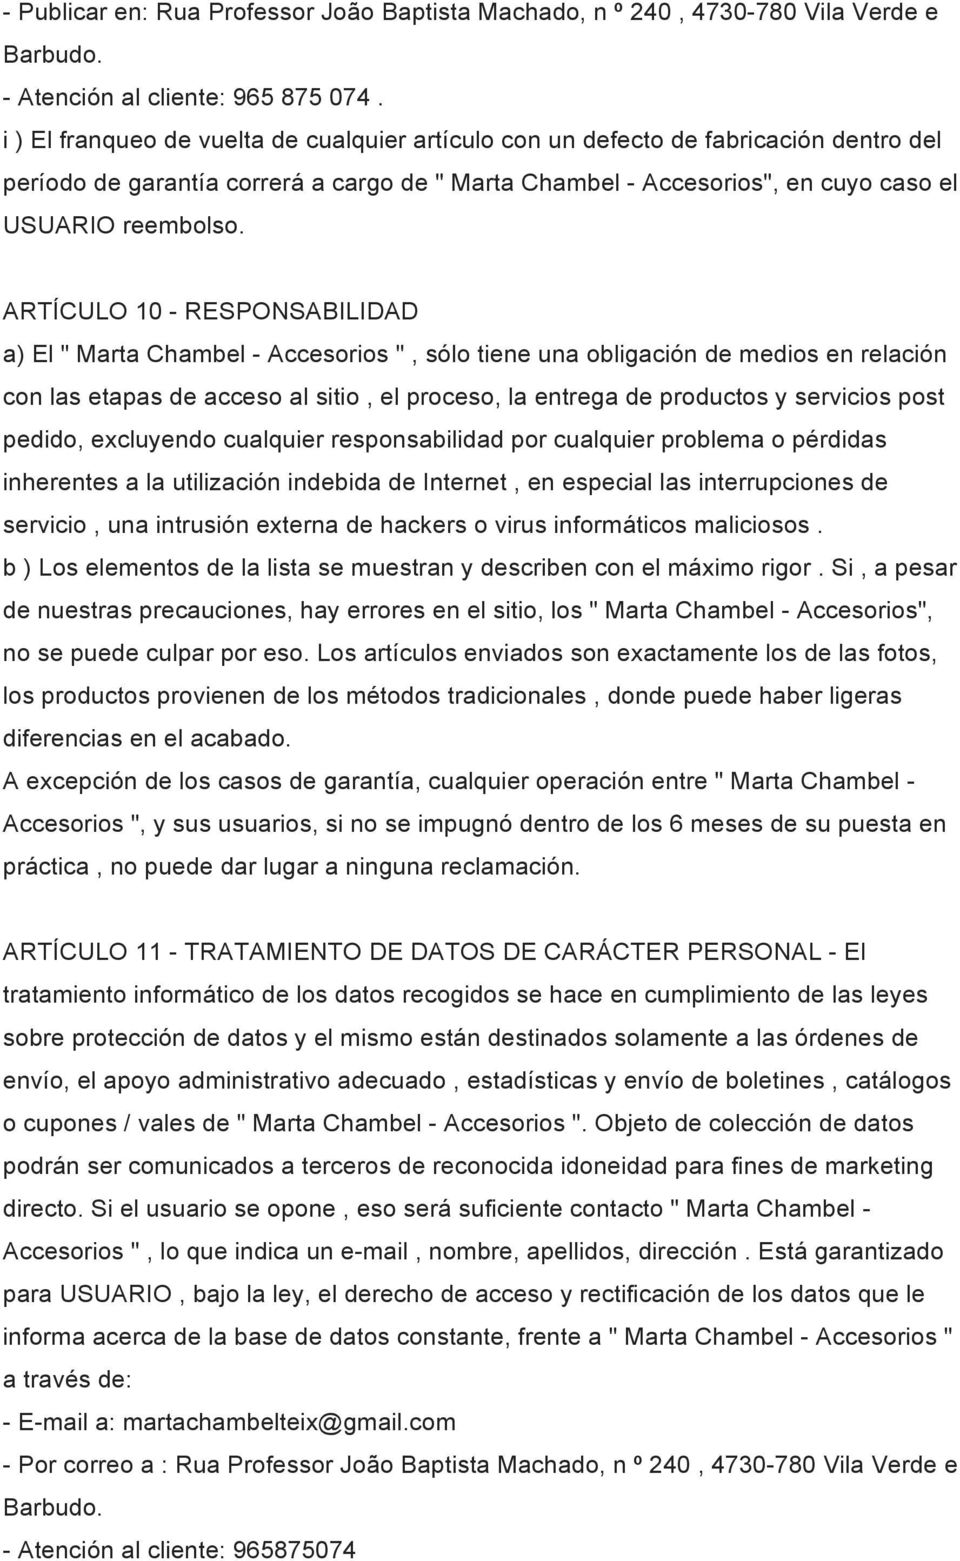 ARTÍCULO 10 - RESPONSABILIDAD a) El " Marta Chambel - Accesorios ", sólo tiene una obligación de medios en relación con las etapas de acceso al sitio, el proceso, la entrega de productos y servicios